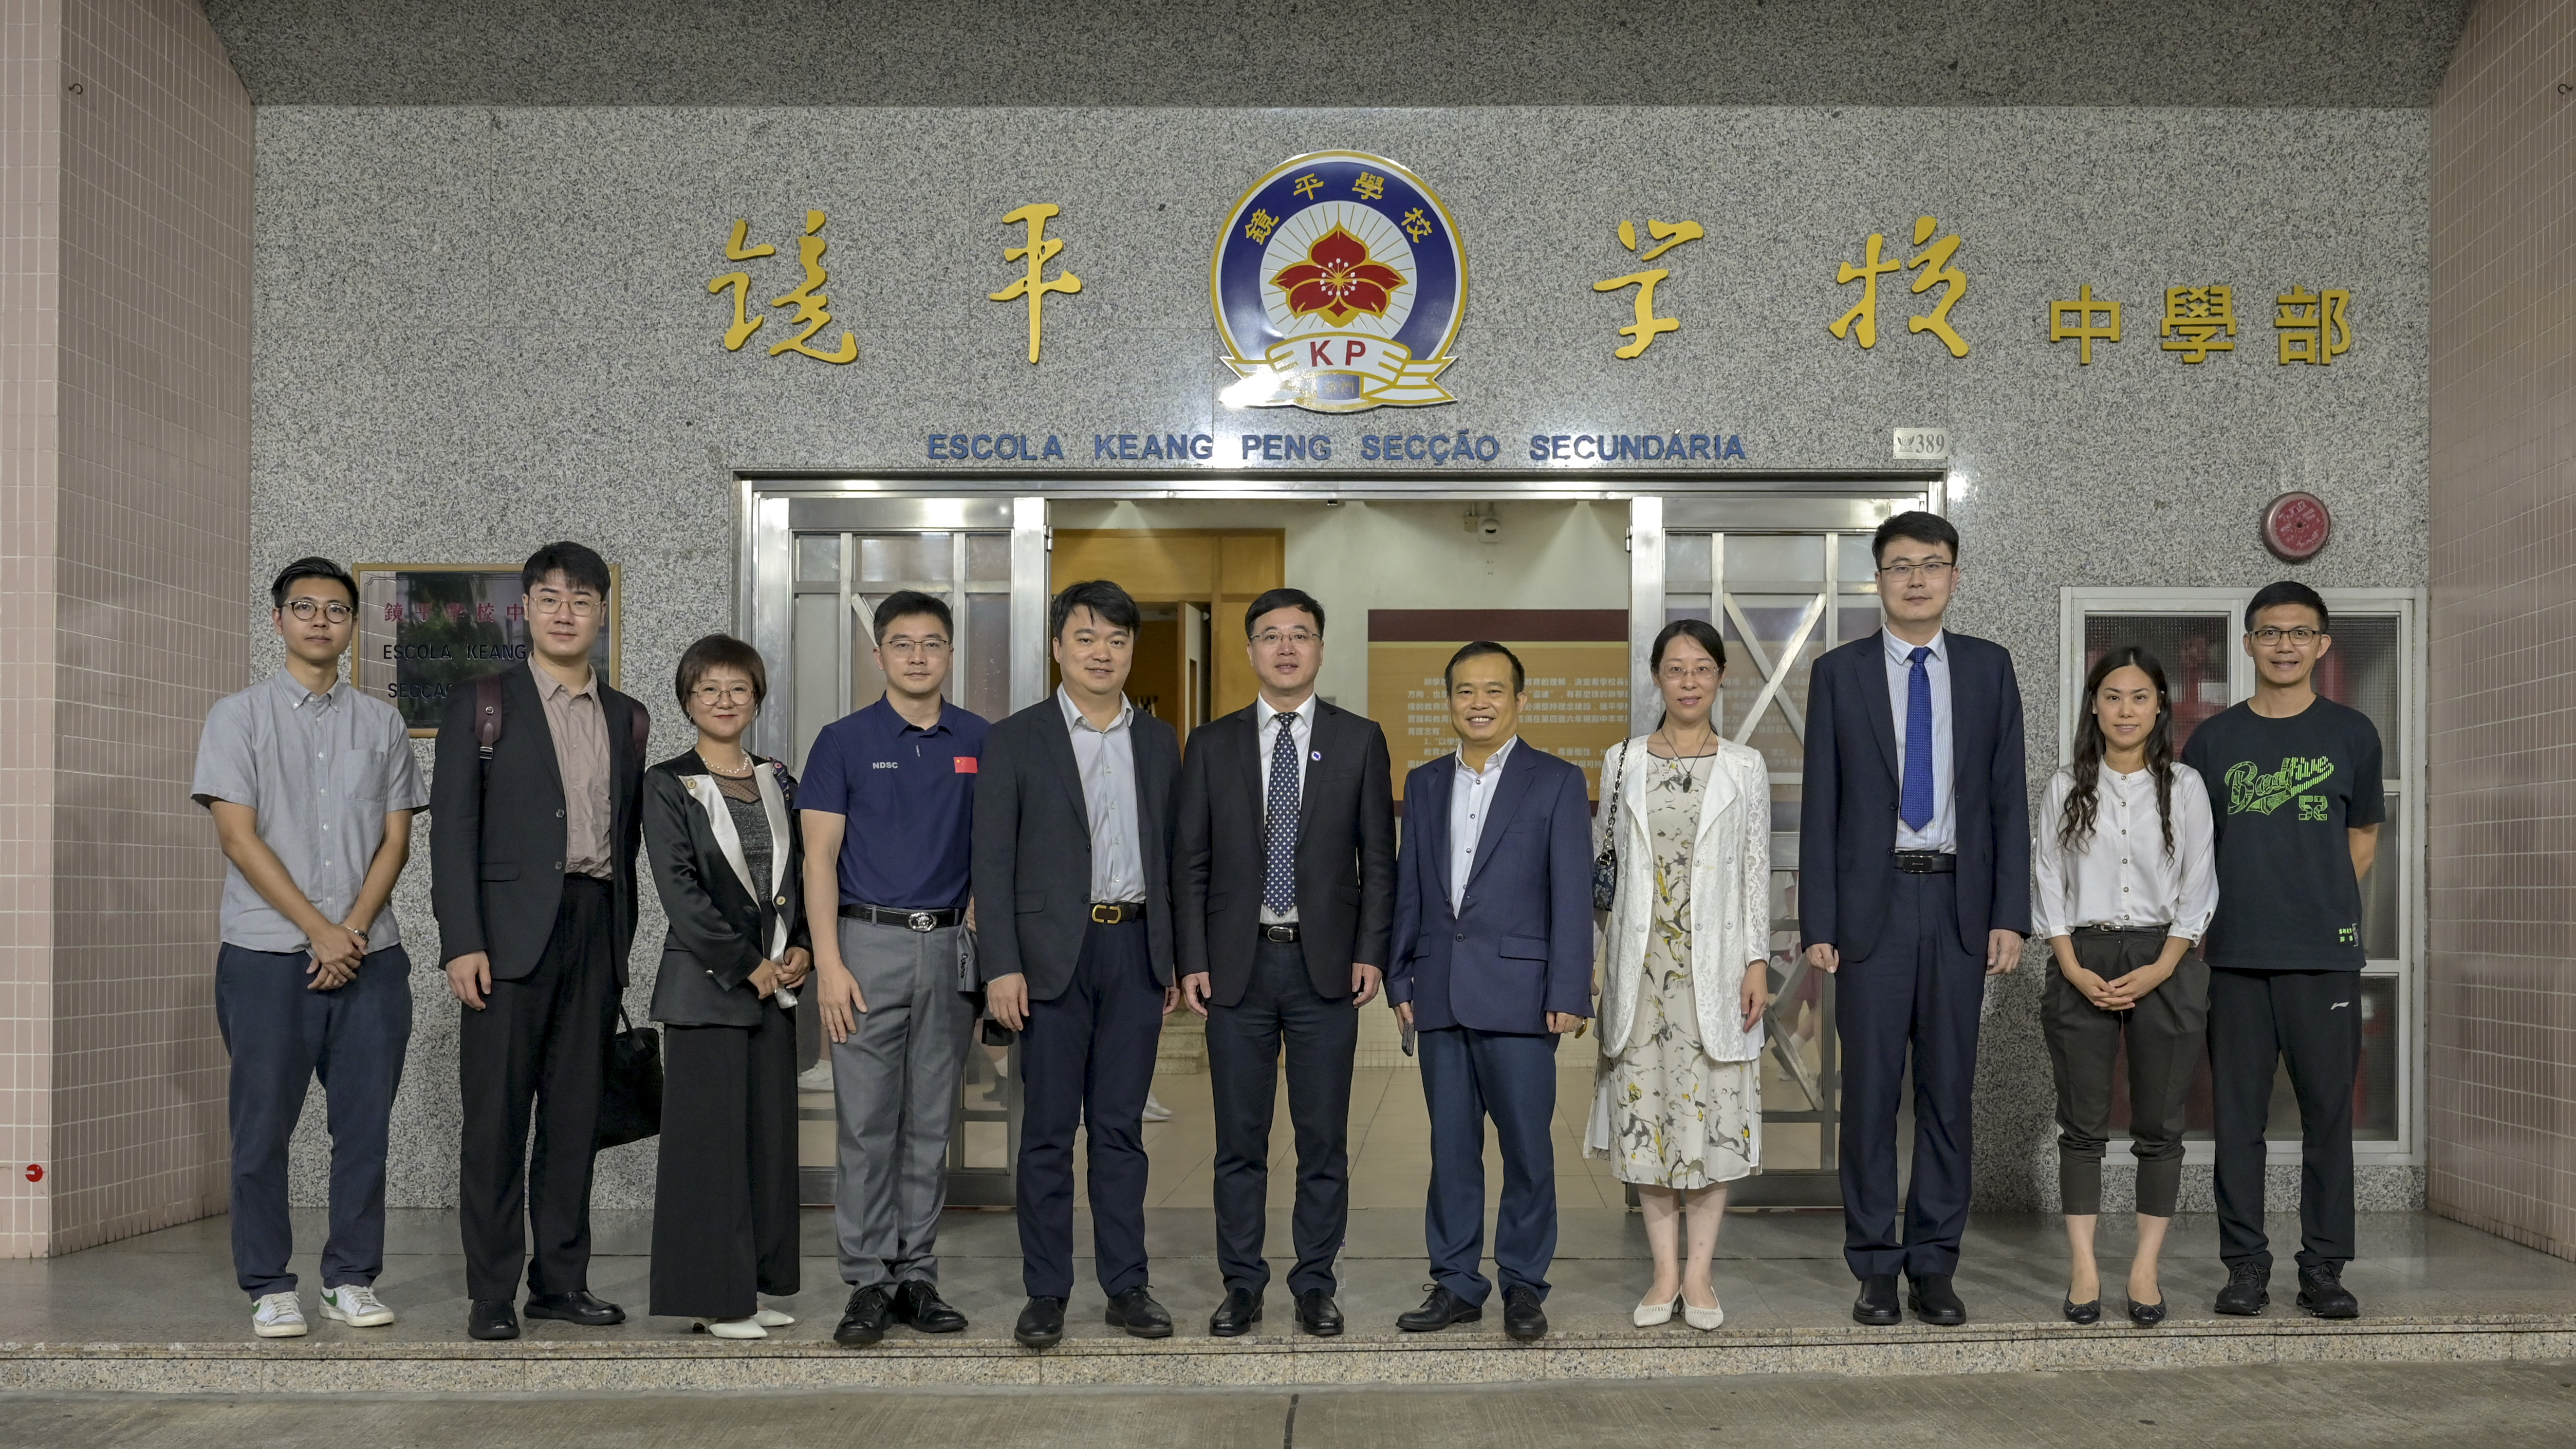 中國青年科技工作者協會五位講者及指導嘉賓與學校行政合照